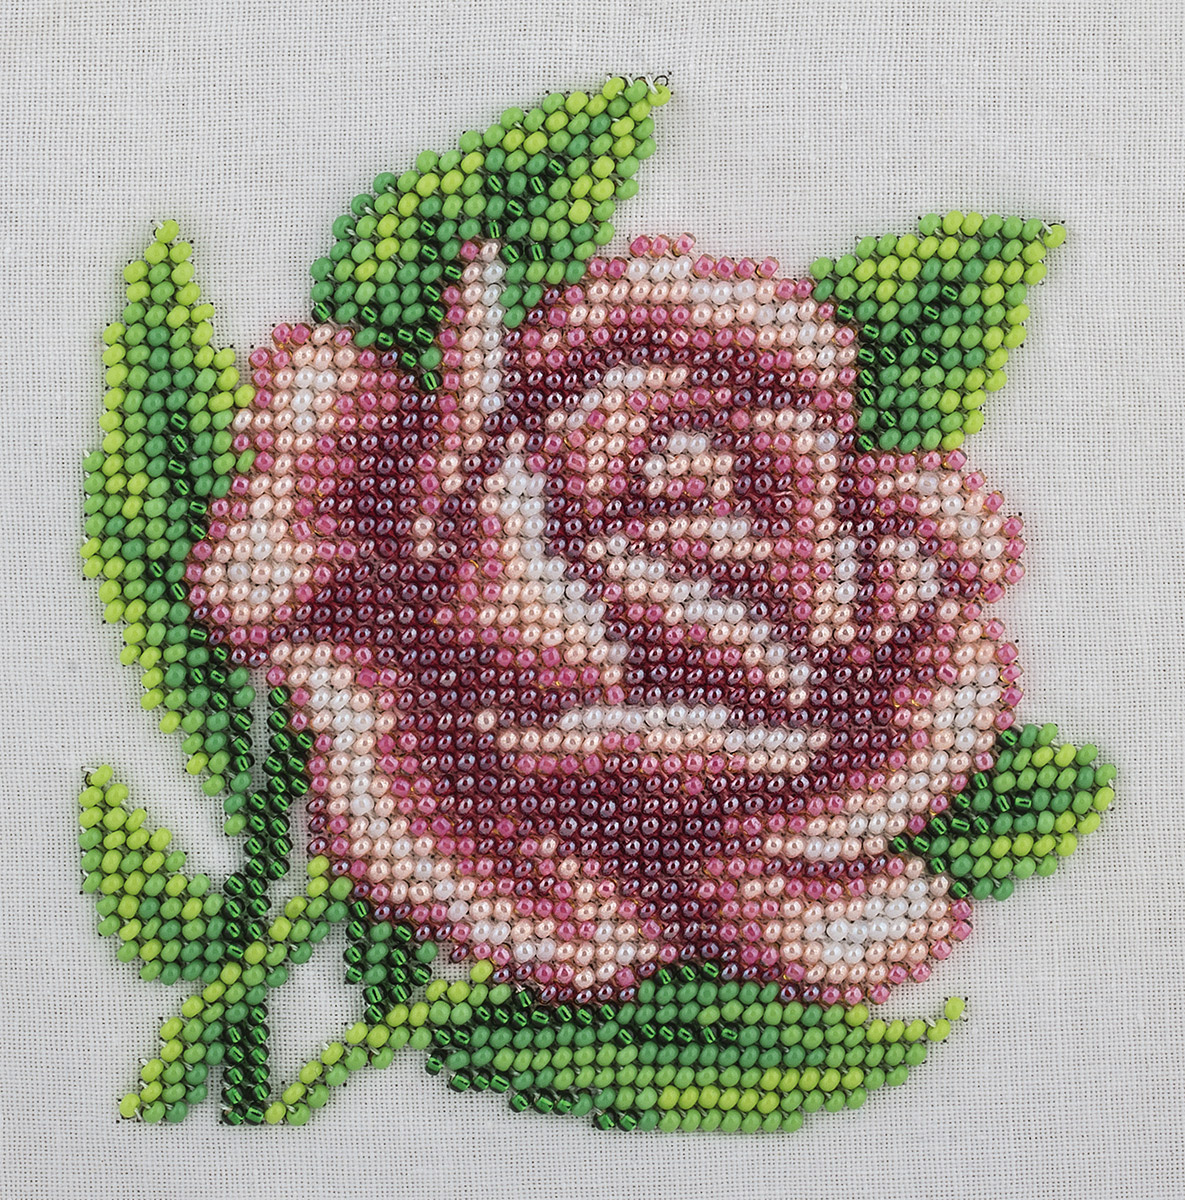 Klart набор для вышивания 8-169 Королевская роза 12 х 12 см Фото 1.